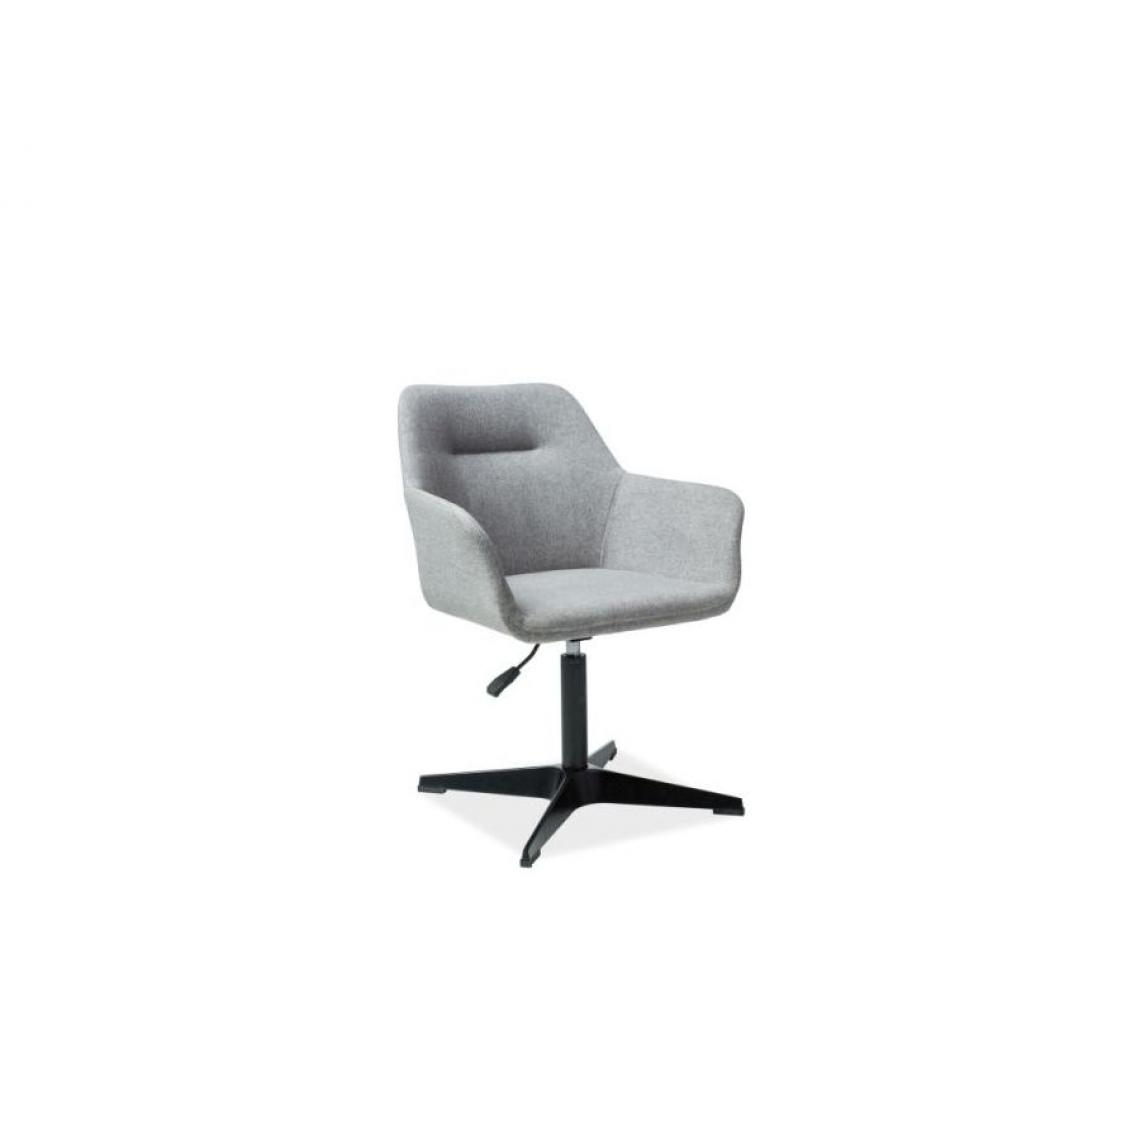 Hucoco - KUZO | Chaise avant-gardiste avec assise pivotante | Fauteuil bureau | 80x60x43 cm | Tissu haute qualité | Accoudoirs souples - Gris - Chaises